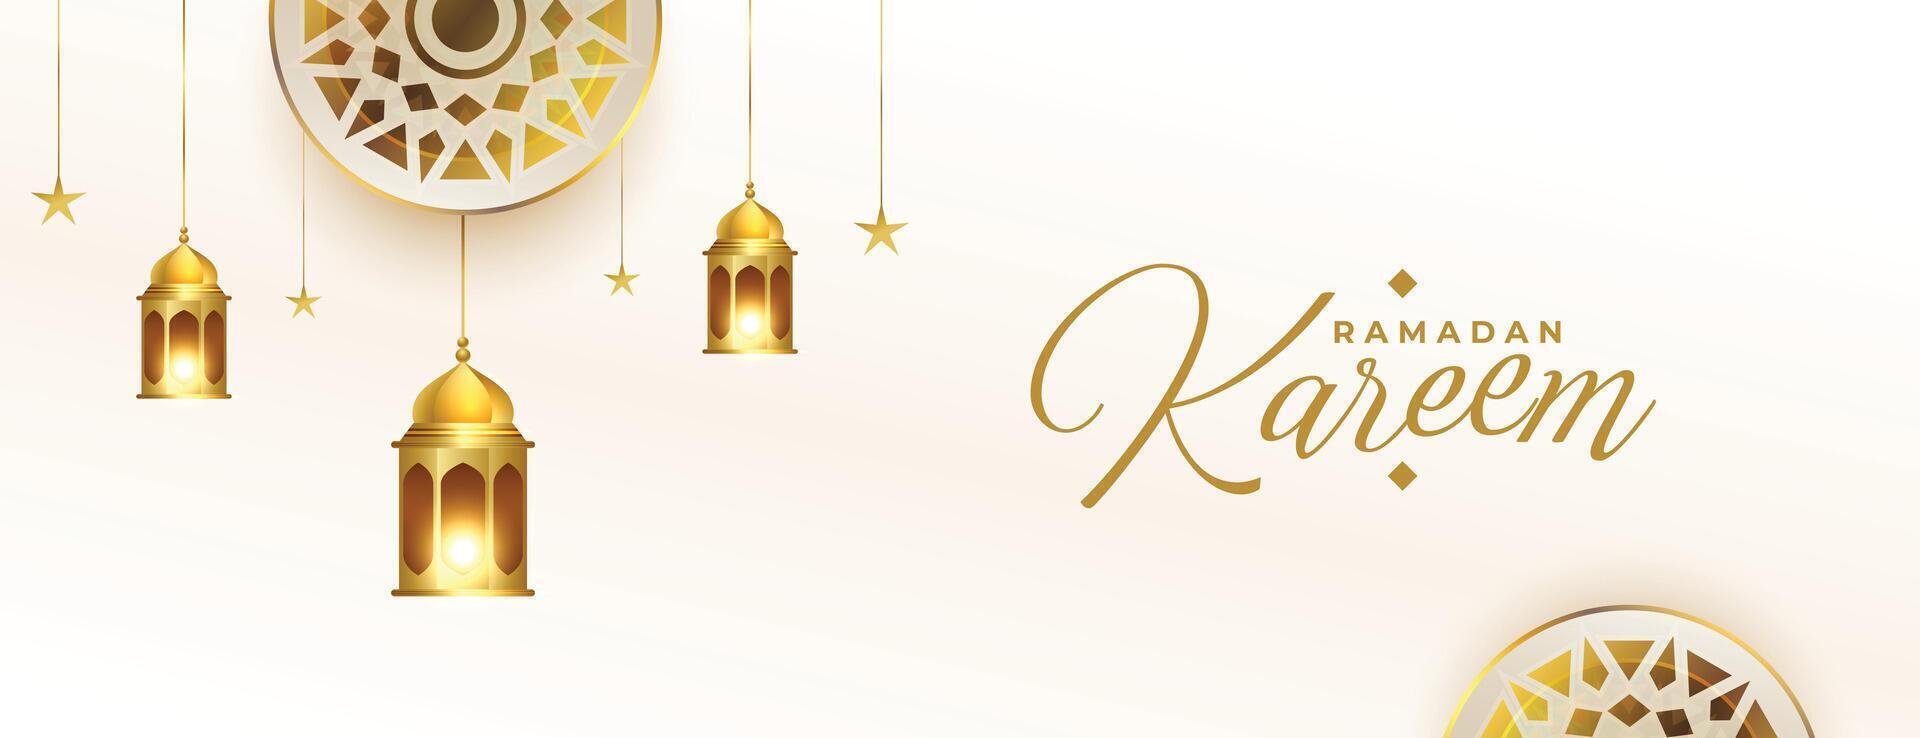 friedlich Ramadan wünscht sich Banner mit golden Laternen und islamisch Dekoration vektor